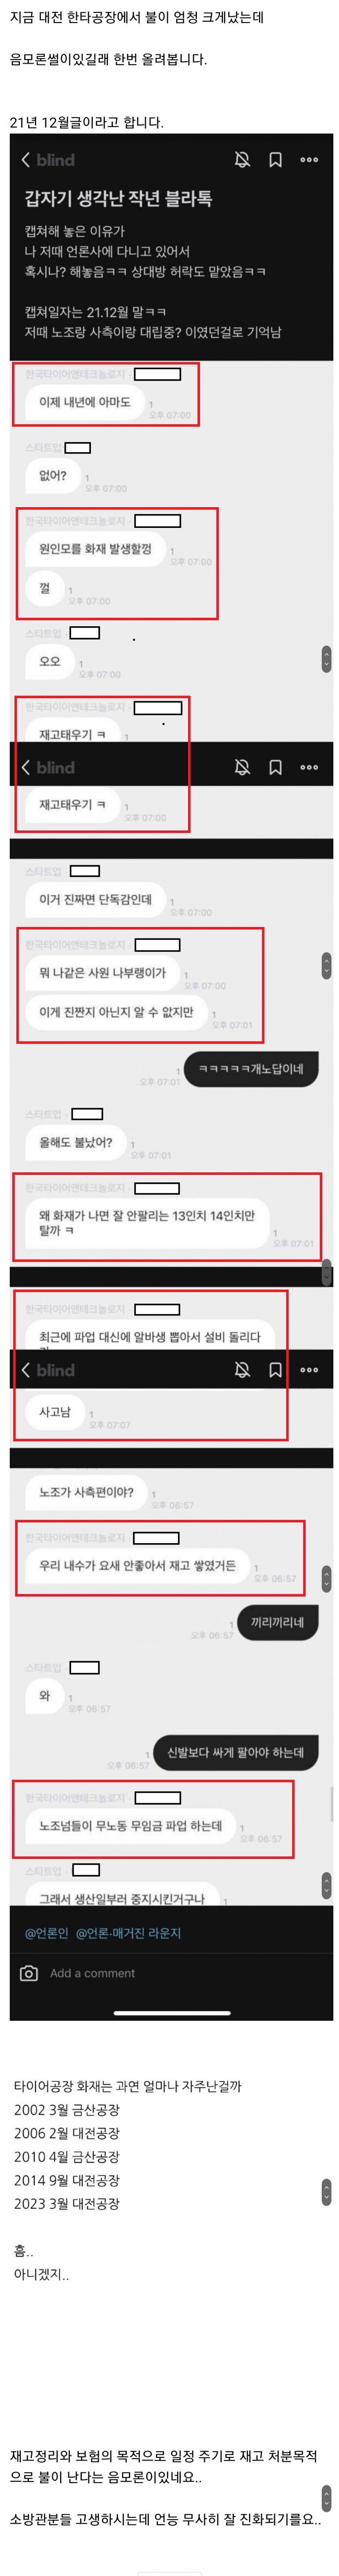 대전 한국타이어 화재 2년 전 예견한 블라인드 게시물'방화 음모론' 급속도로 확산되는 이유 (캡처)